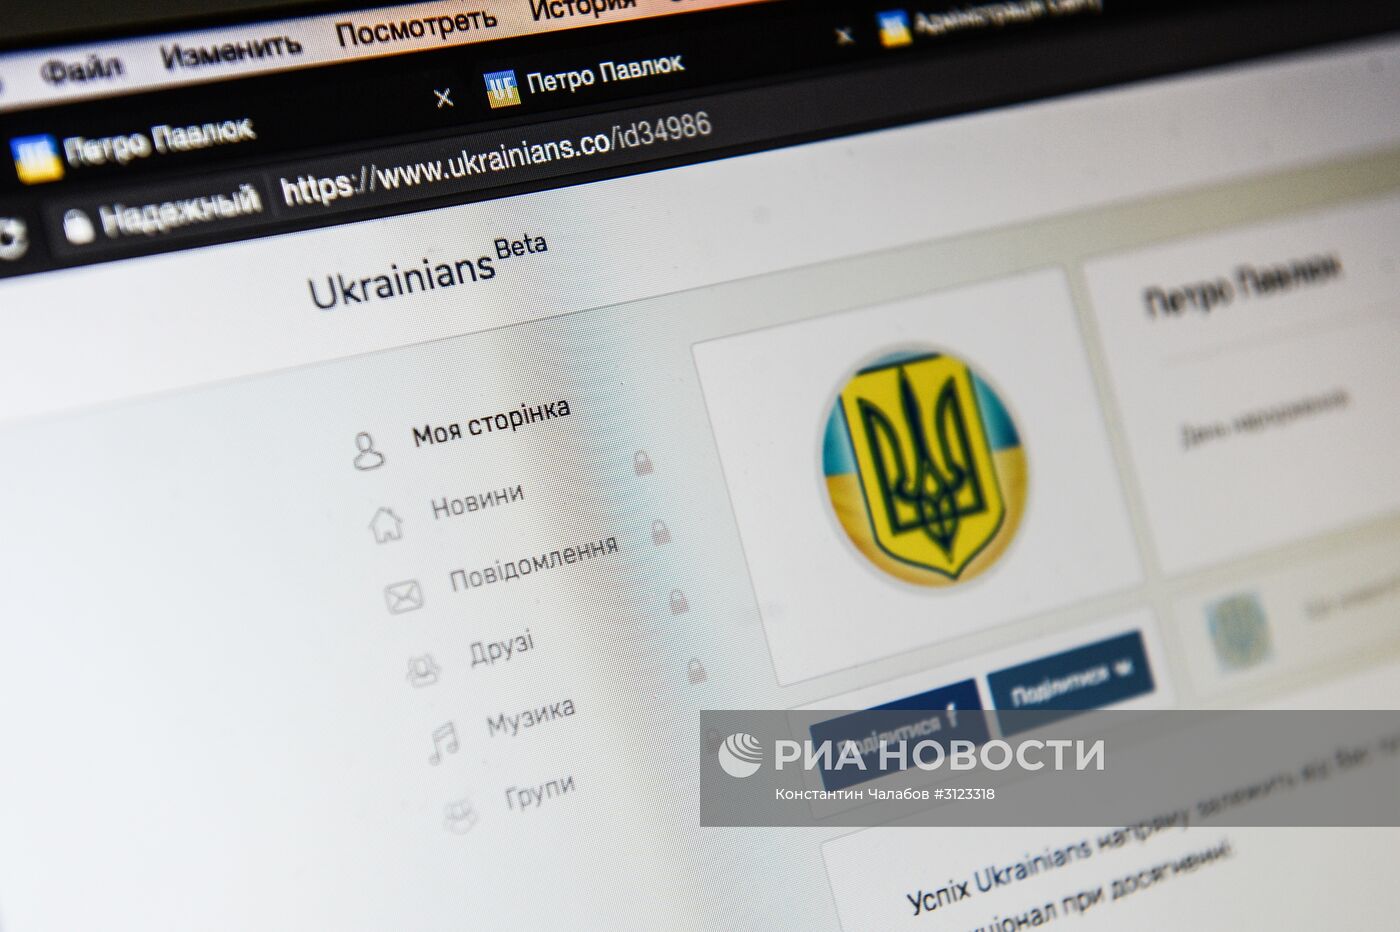 Открыта регистрация в новой украинской социальной сети Ukrainians